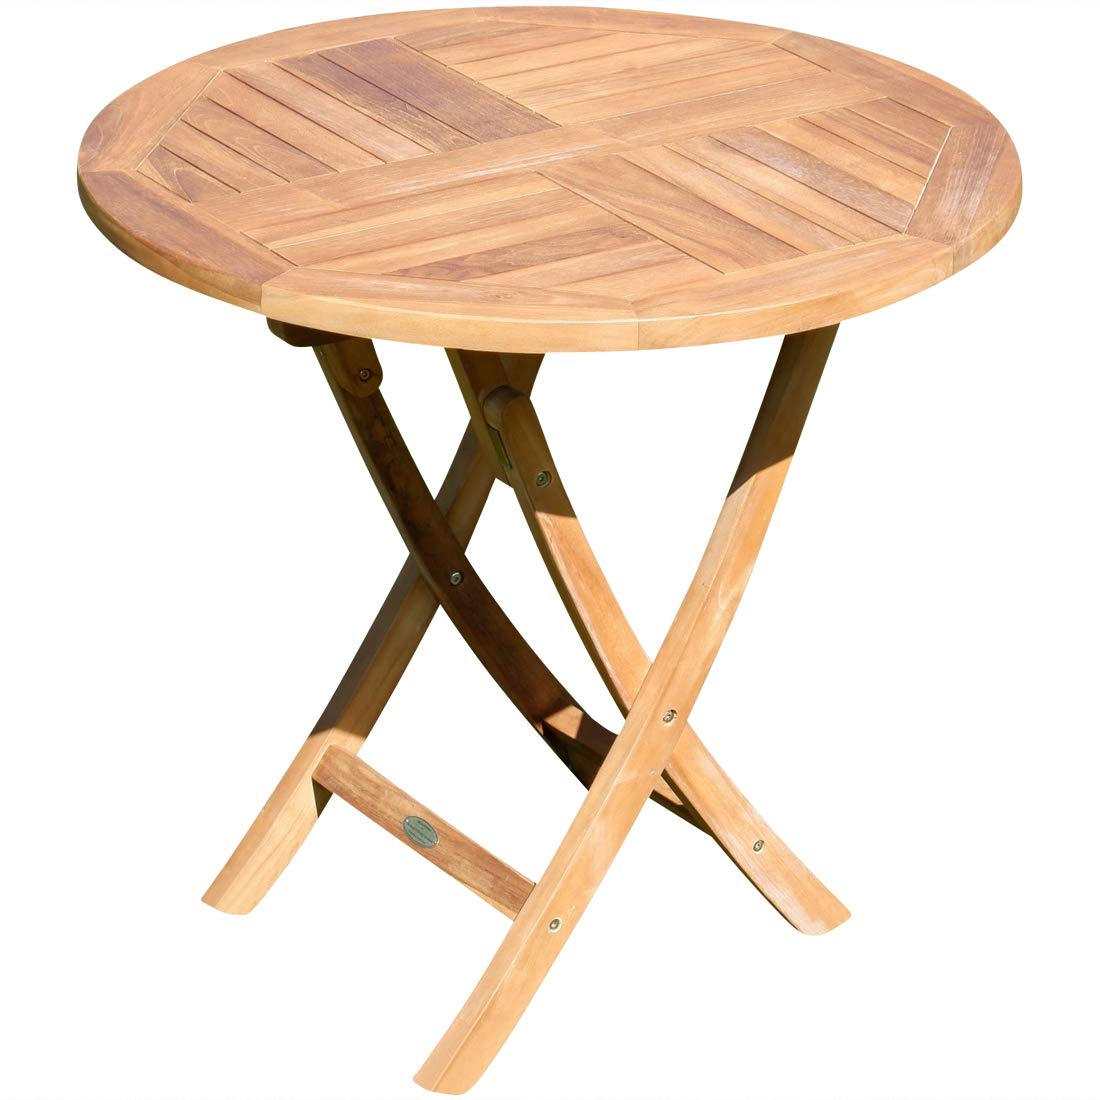 AS-S Teak runder Klapptisch Gartentisch Holztisch Garten Tisch rund 80cm JAV-Coamo Teakholz